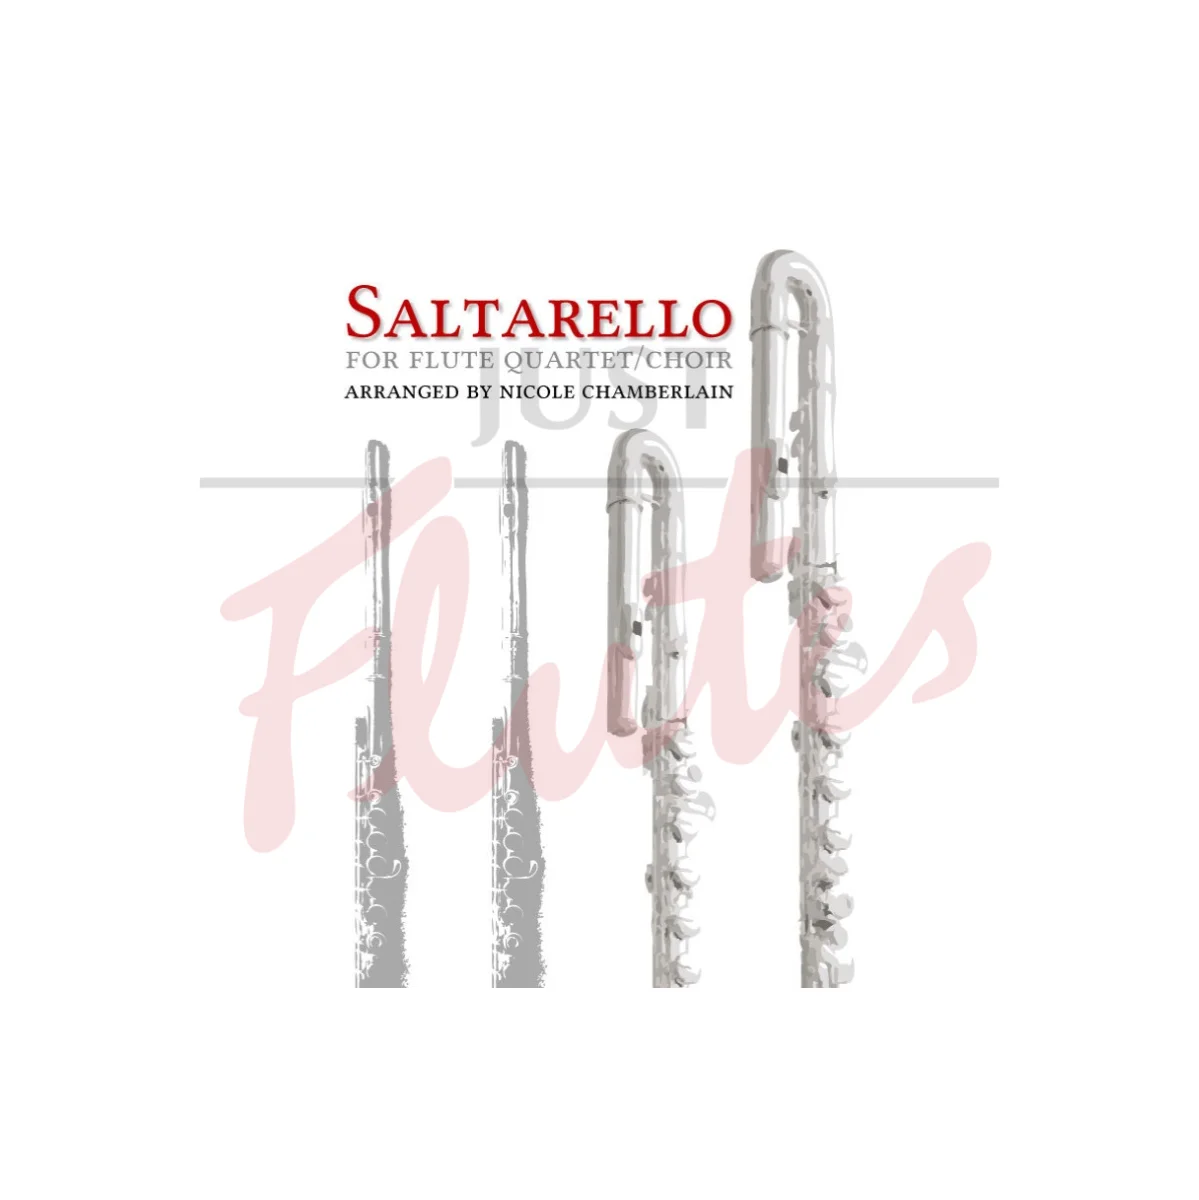 Saltarello for Flute Quartet/Choir